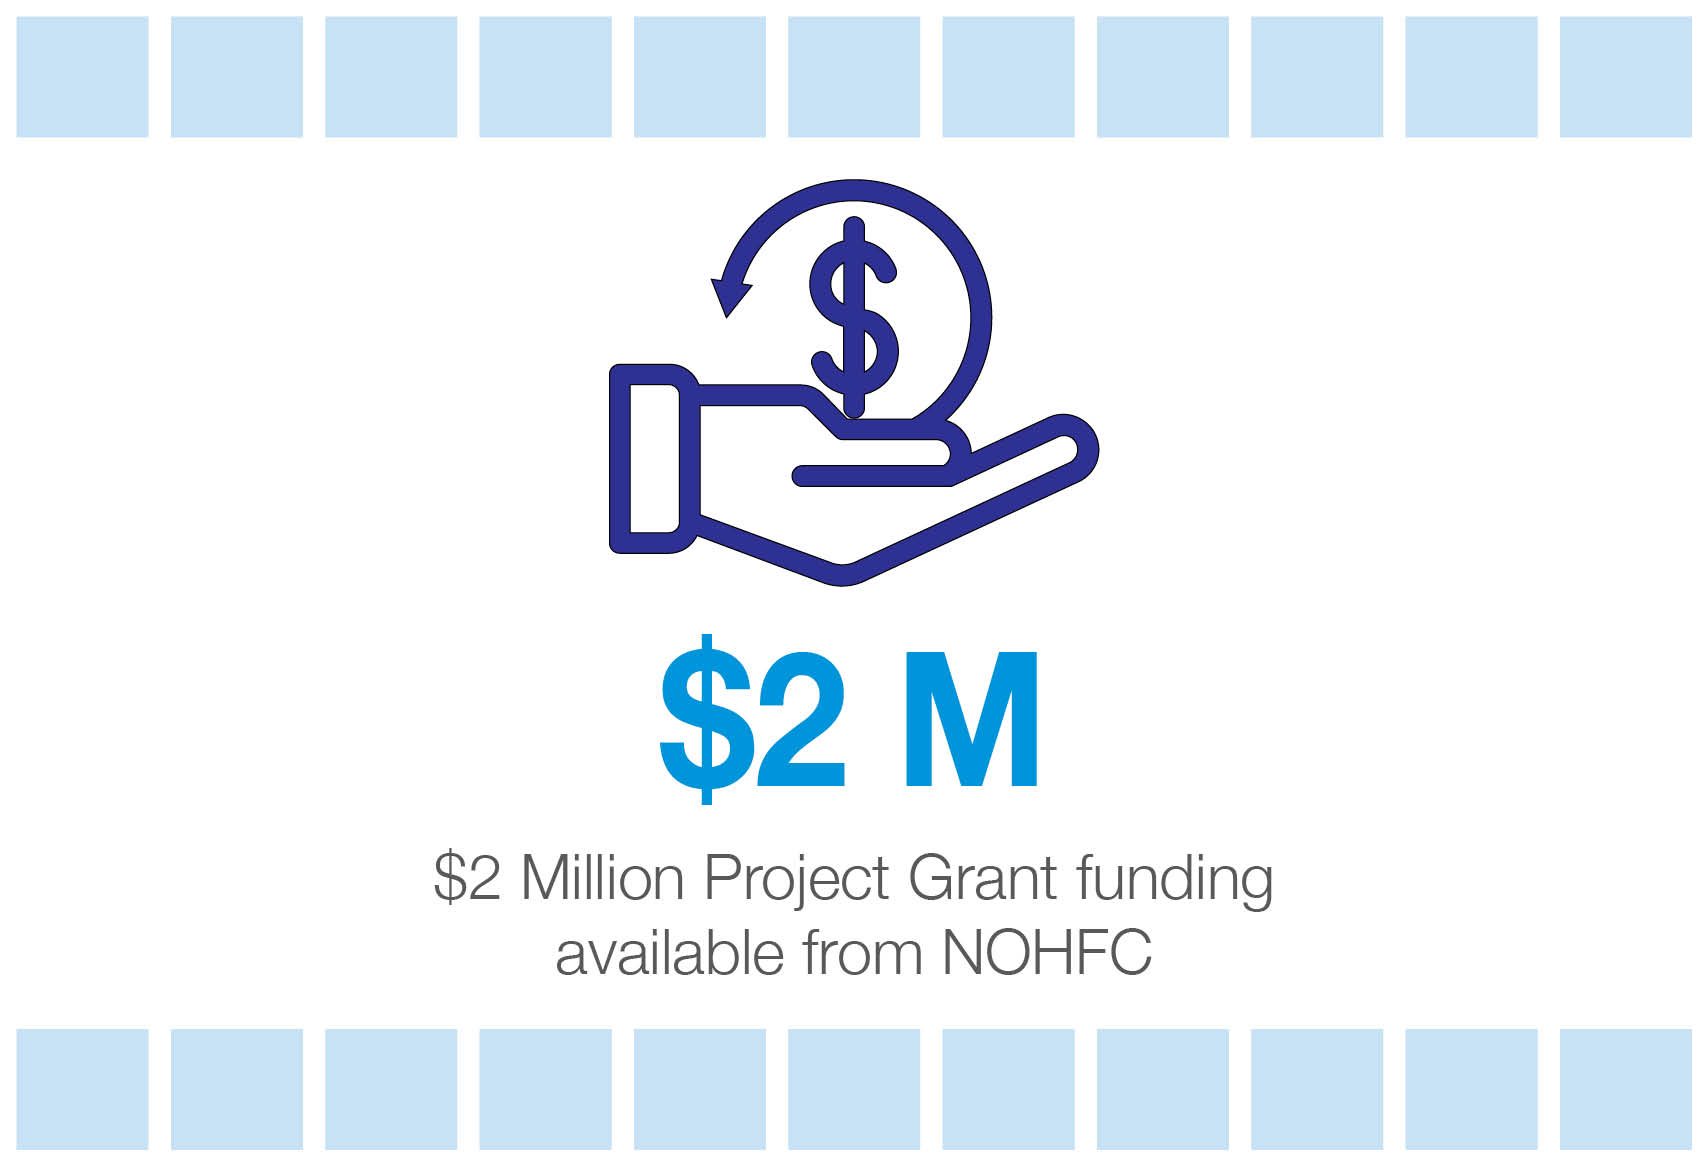 نماد - بودجه کمک مالی 2 میلیون دلاری پروژه از NOHFC در دسترس است